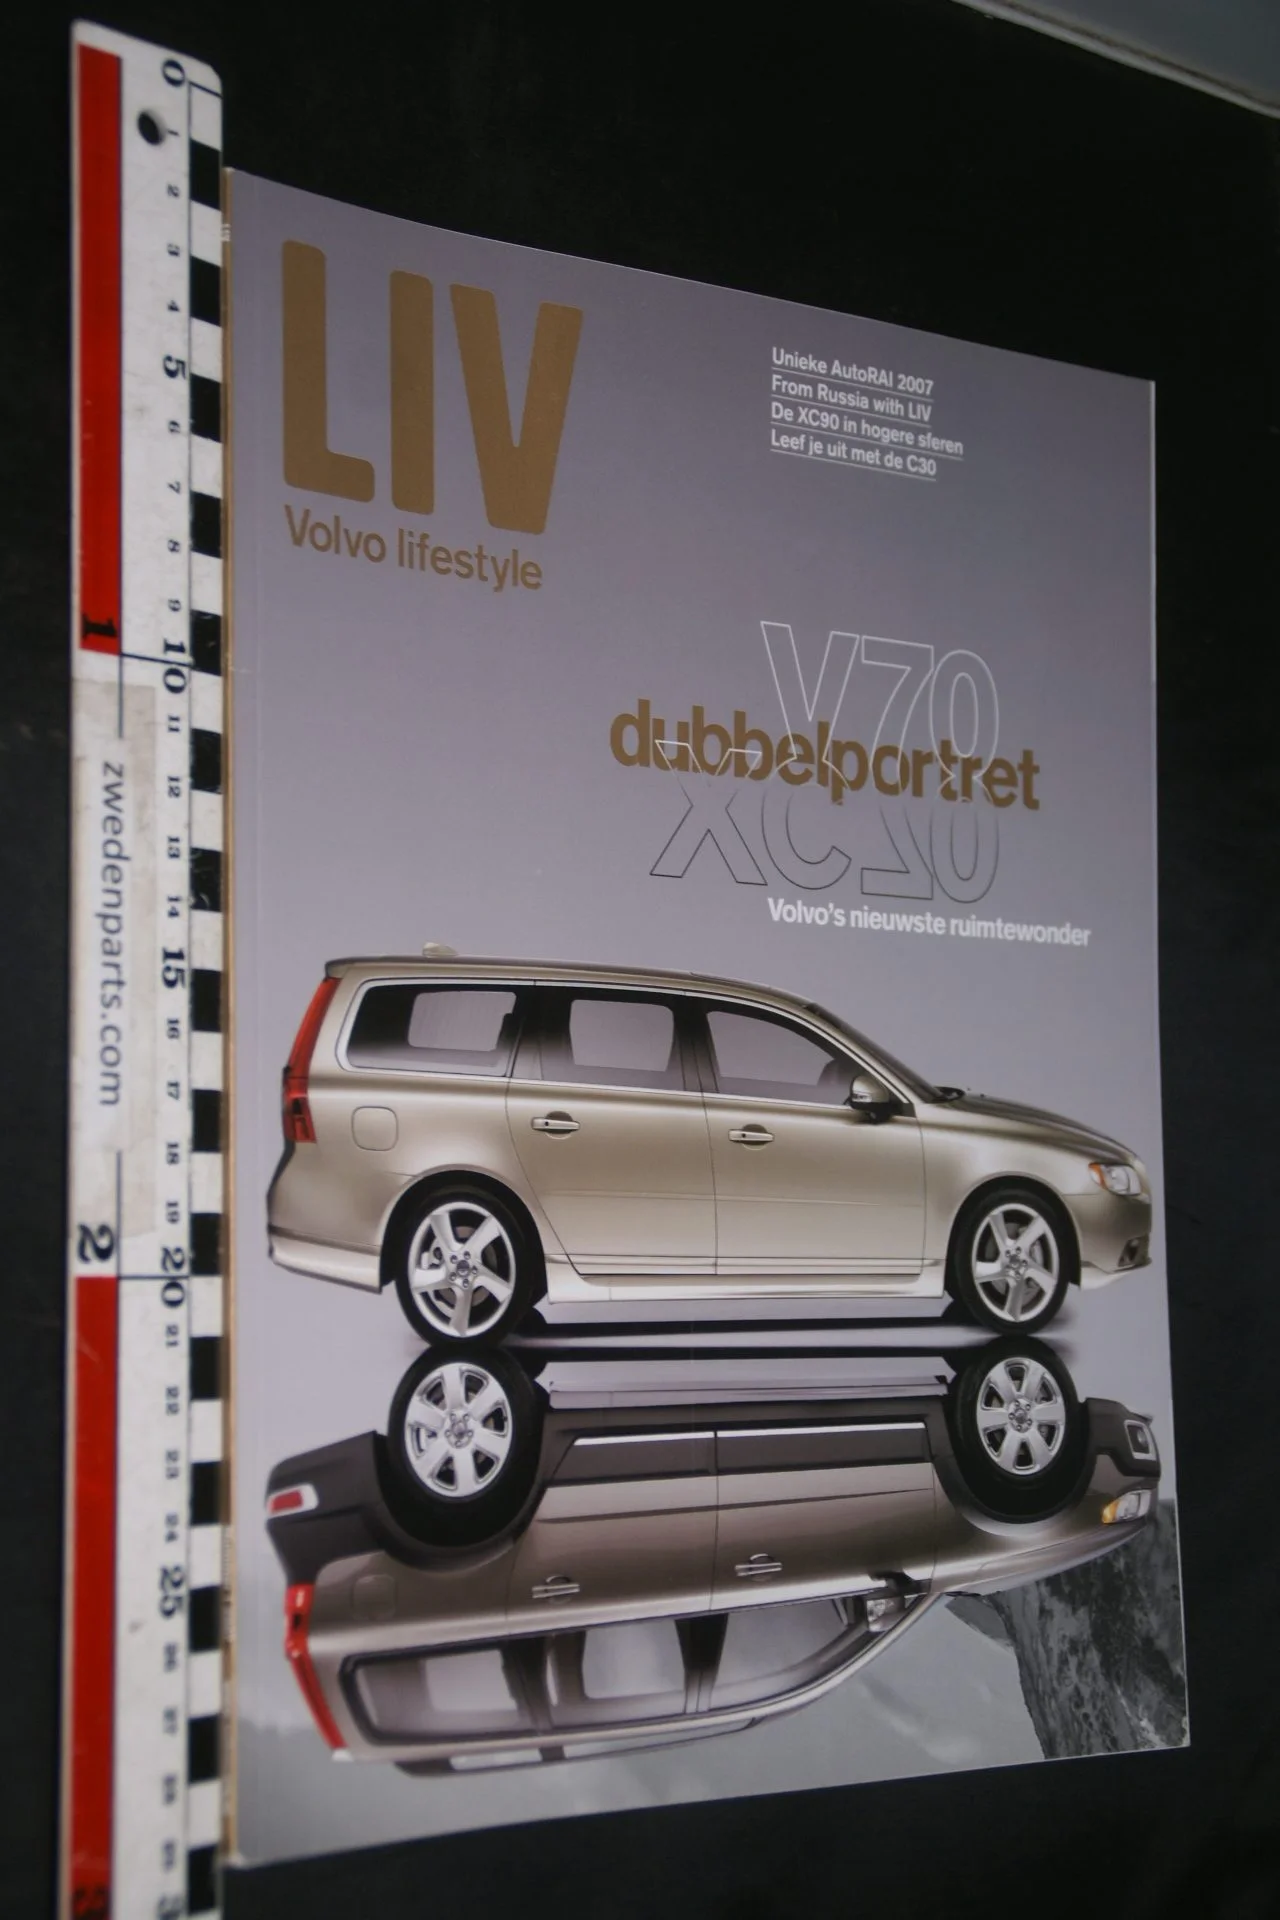 DSC05125 2007 tijdschrift Volvo LIV nr 1